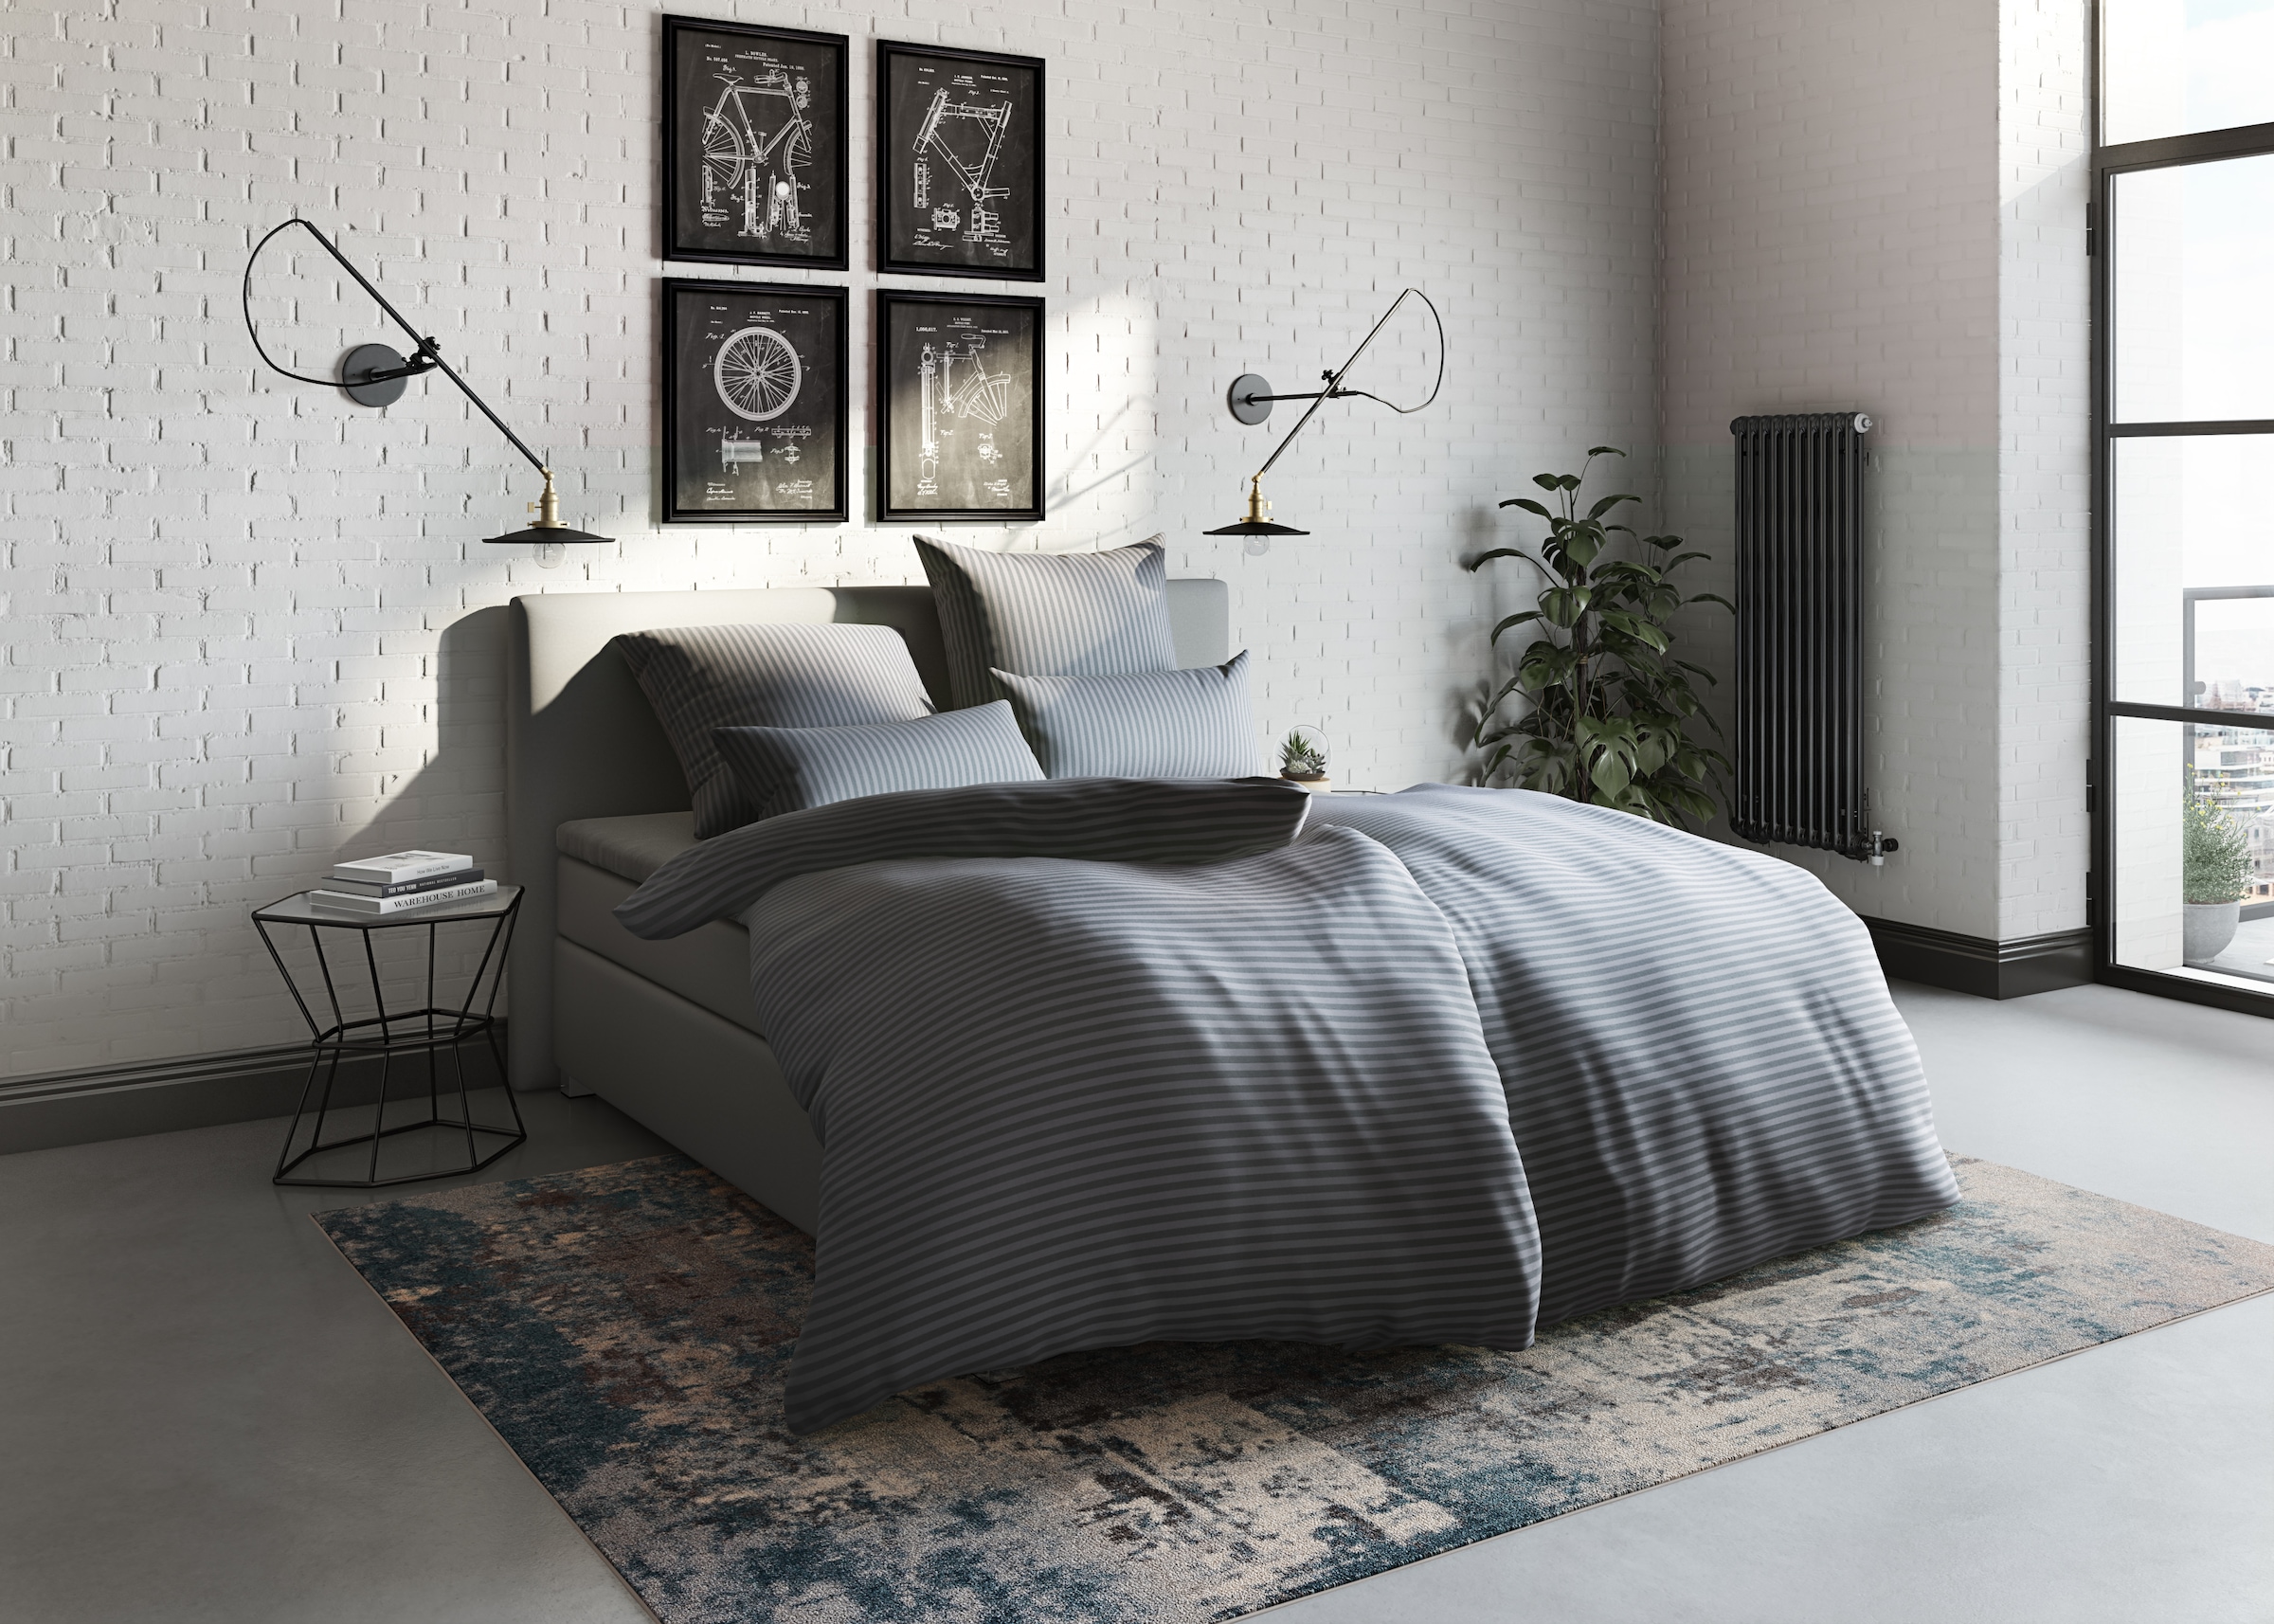 Bruno Banani Bettwäsche »Jassen in Gr. 135x200 oder 155x220 cm«, (2 tlg.), moderne Bettwäsche aus Baumwolle, Bettwäsche mit Streifen-Design